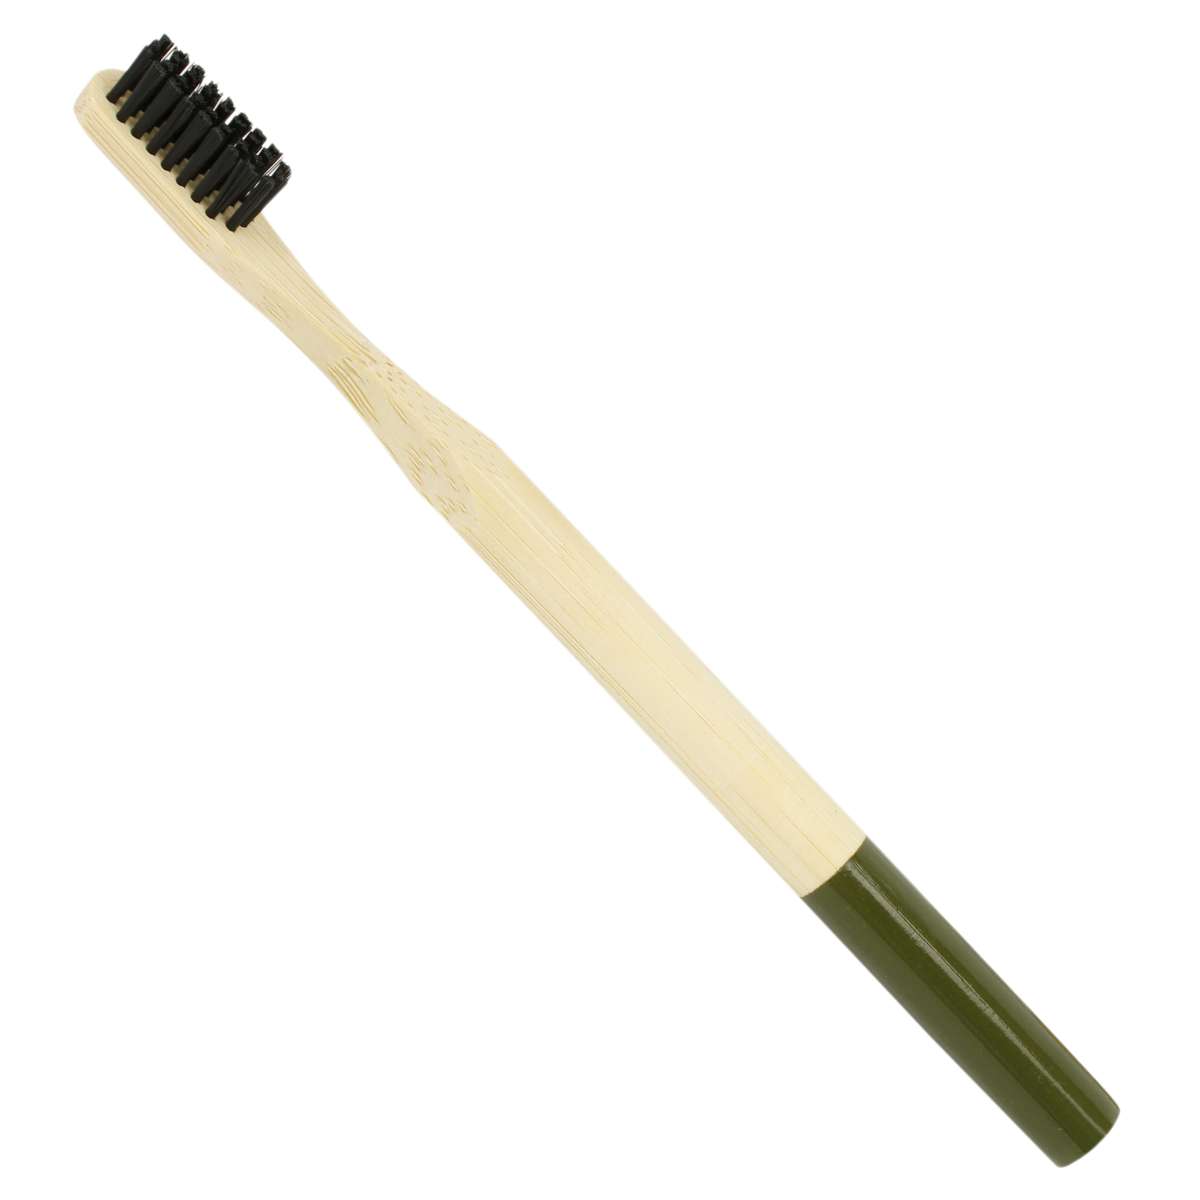 楽天市場 竹 歯ブラシ 自然素材 歯ブラシ かわいい おしゃれ 大人用 ハブラシ 環境に優しい 竹製 プレゼント ギフト にも ピアニッシモ